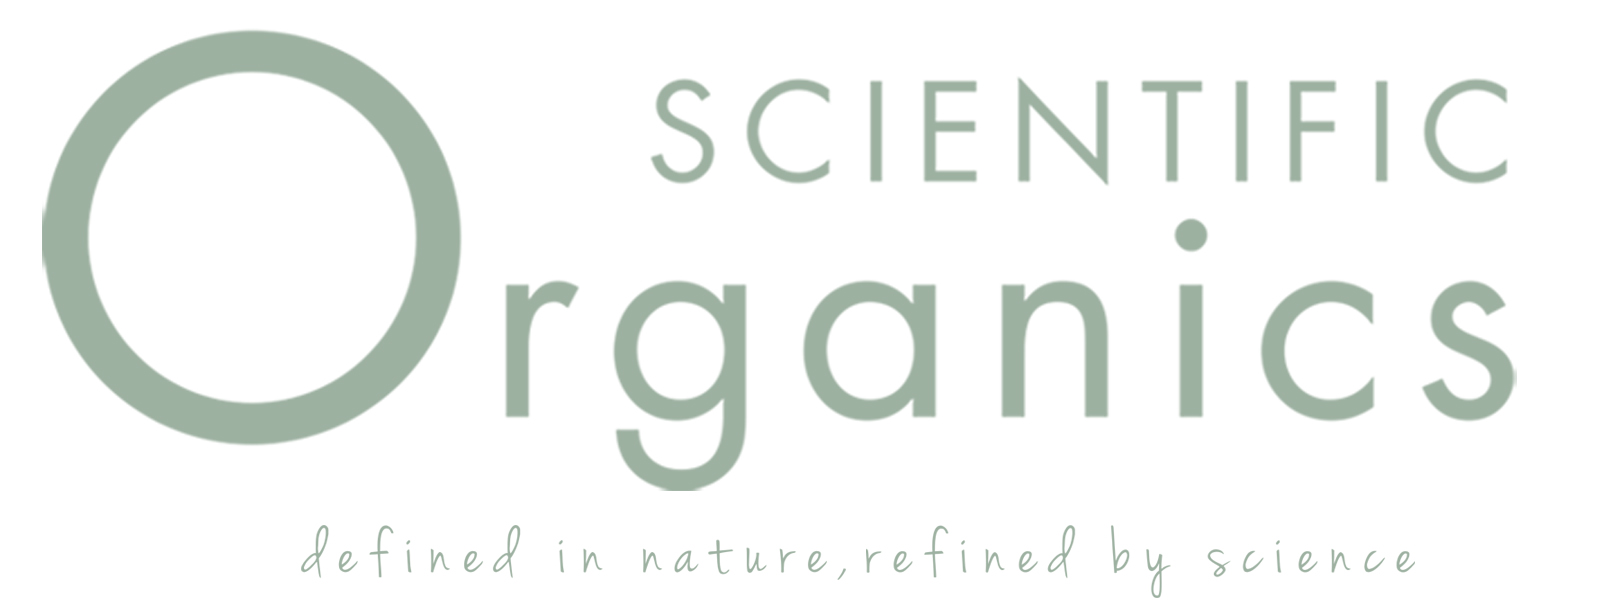 Scientific Organics